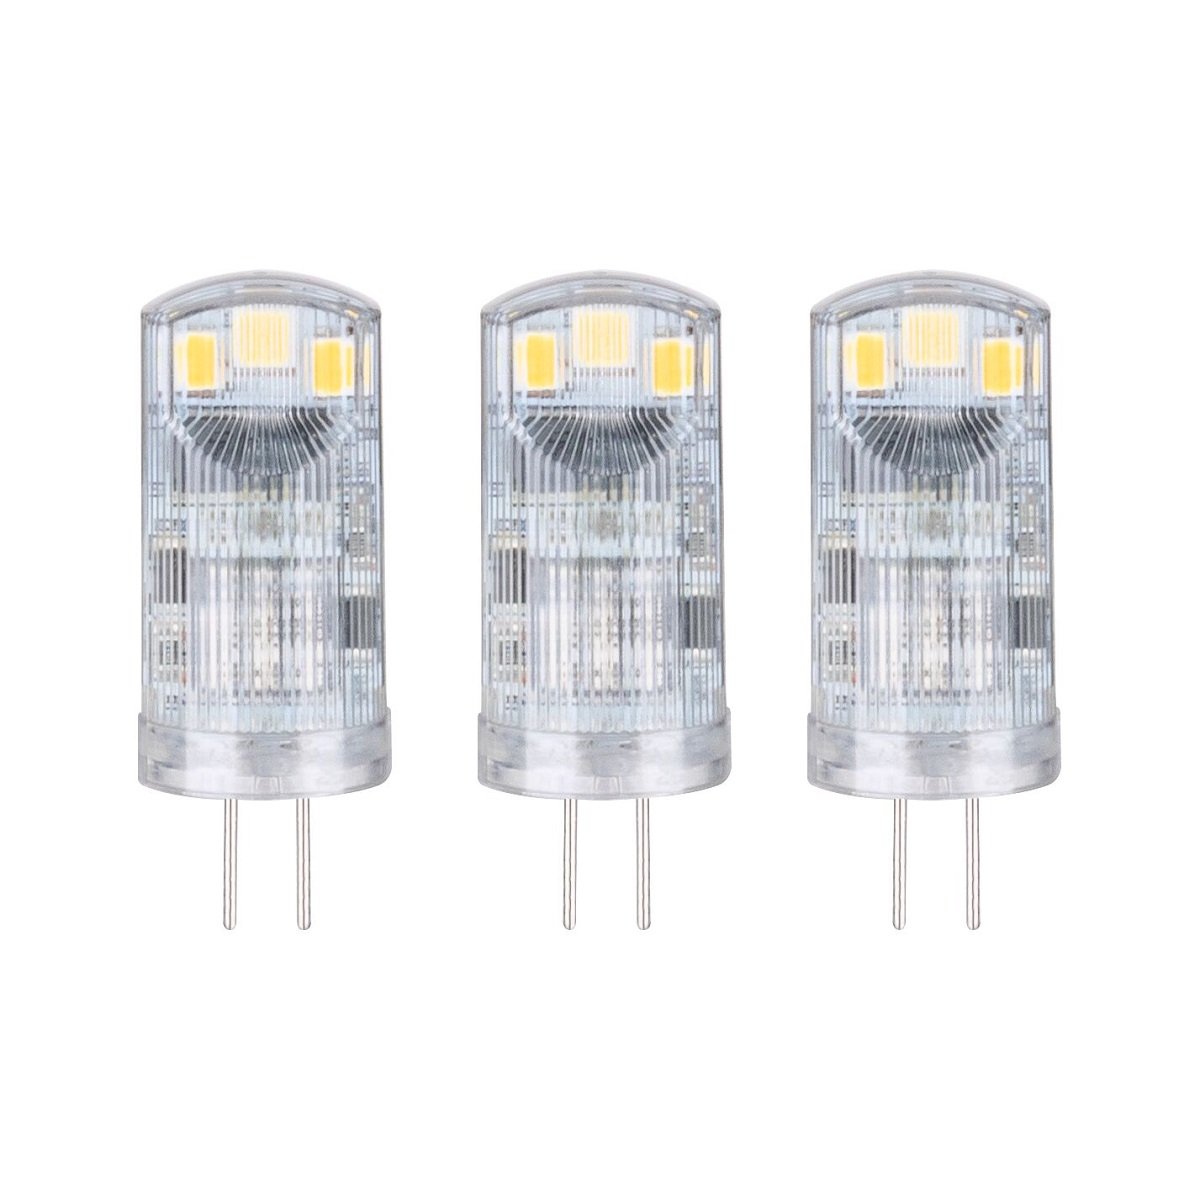 12V LED Lampen online kaufen